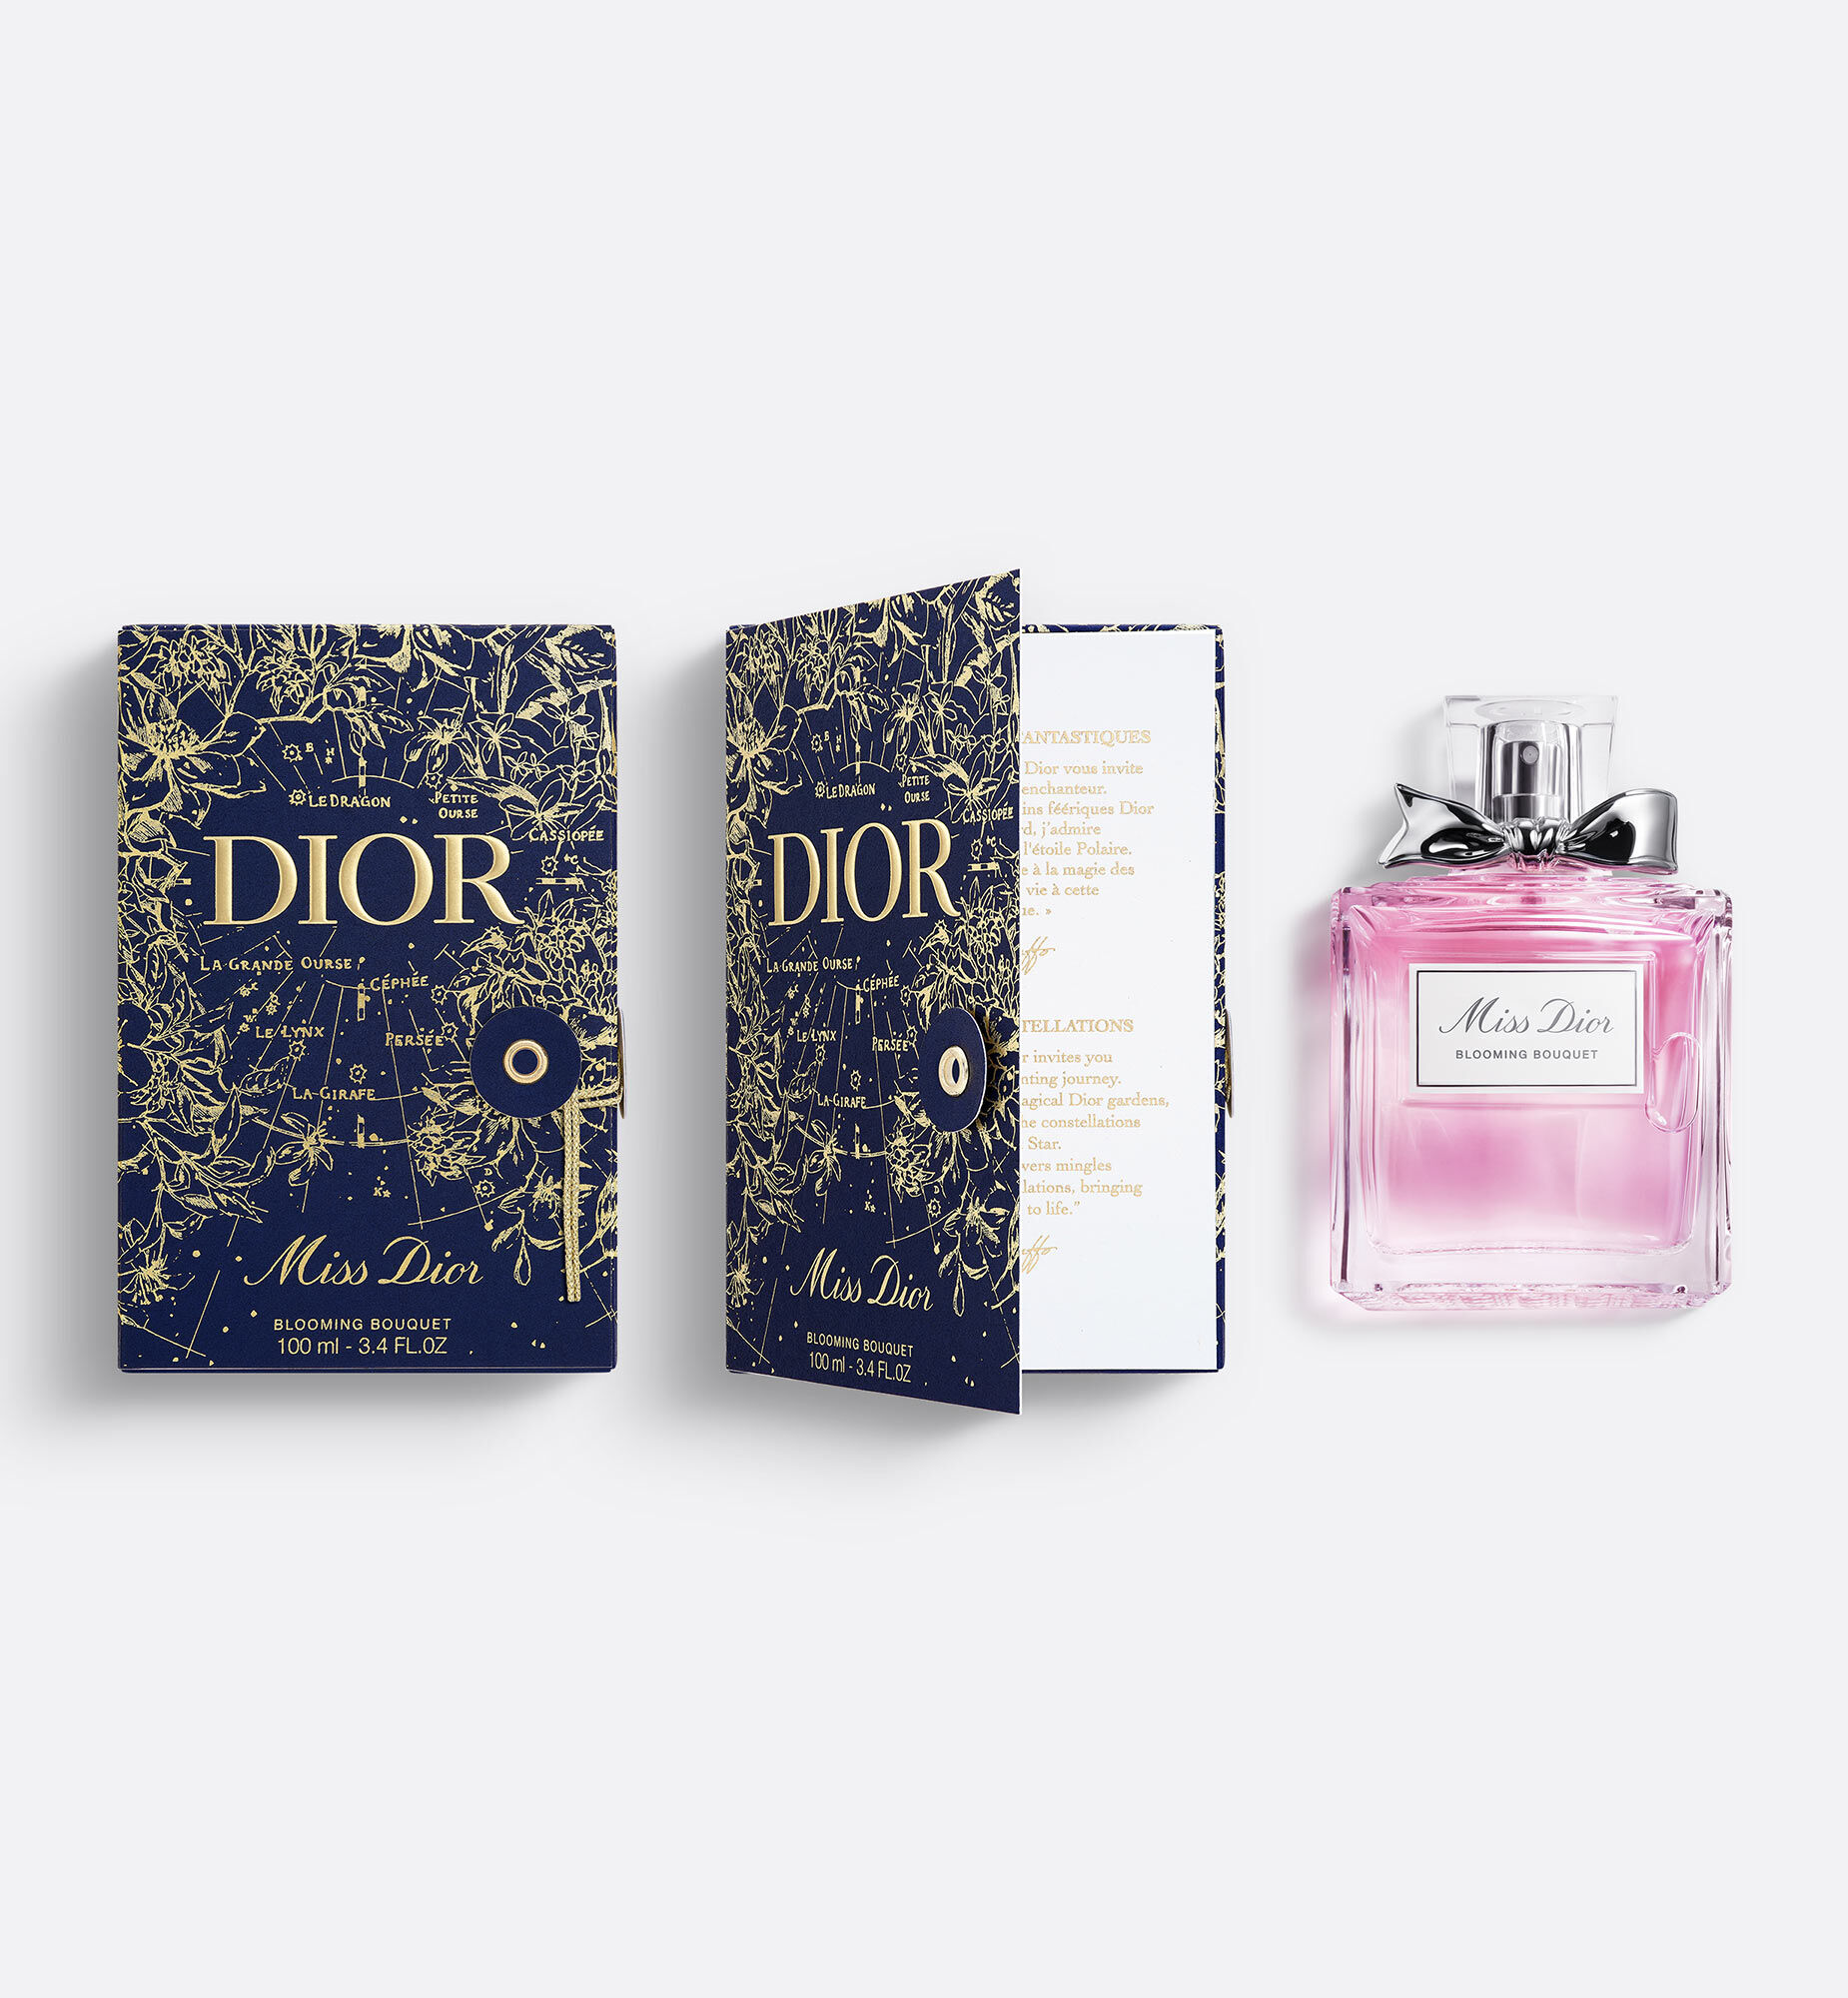 DIOR | フレグランス (香水) メイクアップ (化粧品・コスメ 